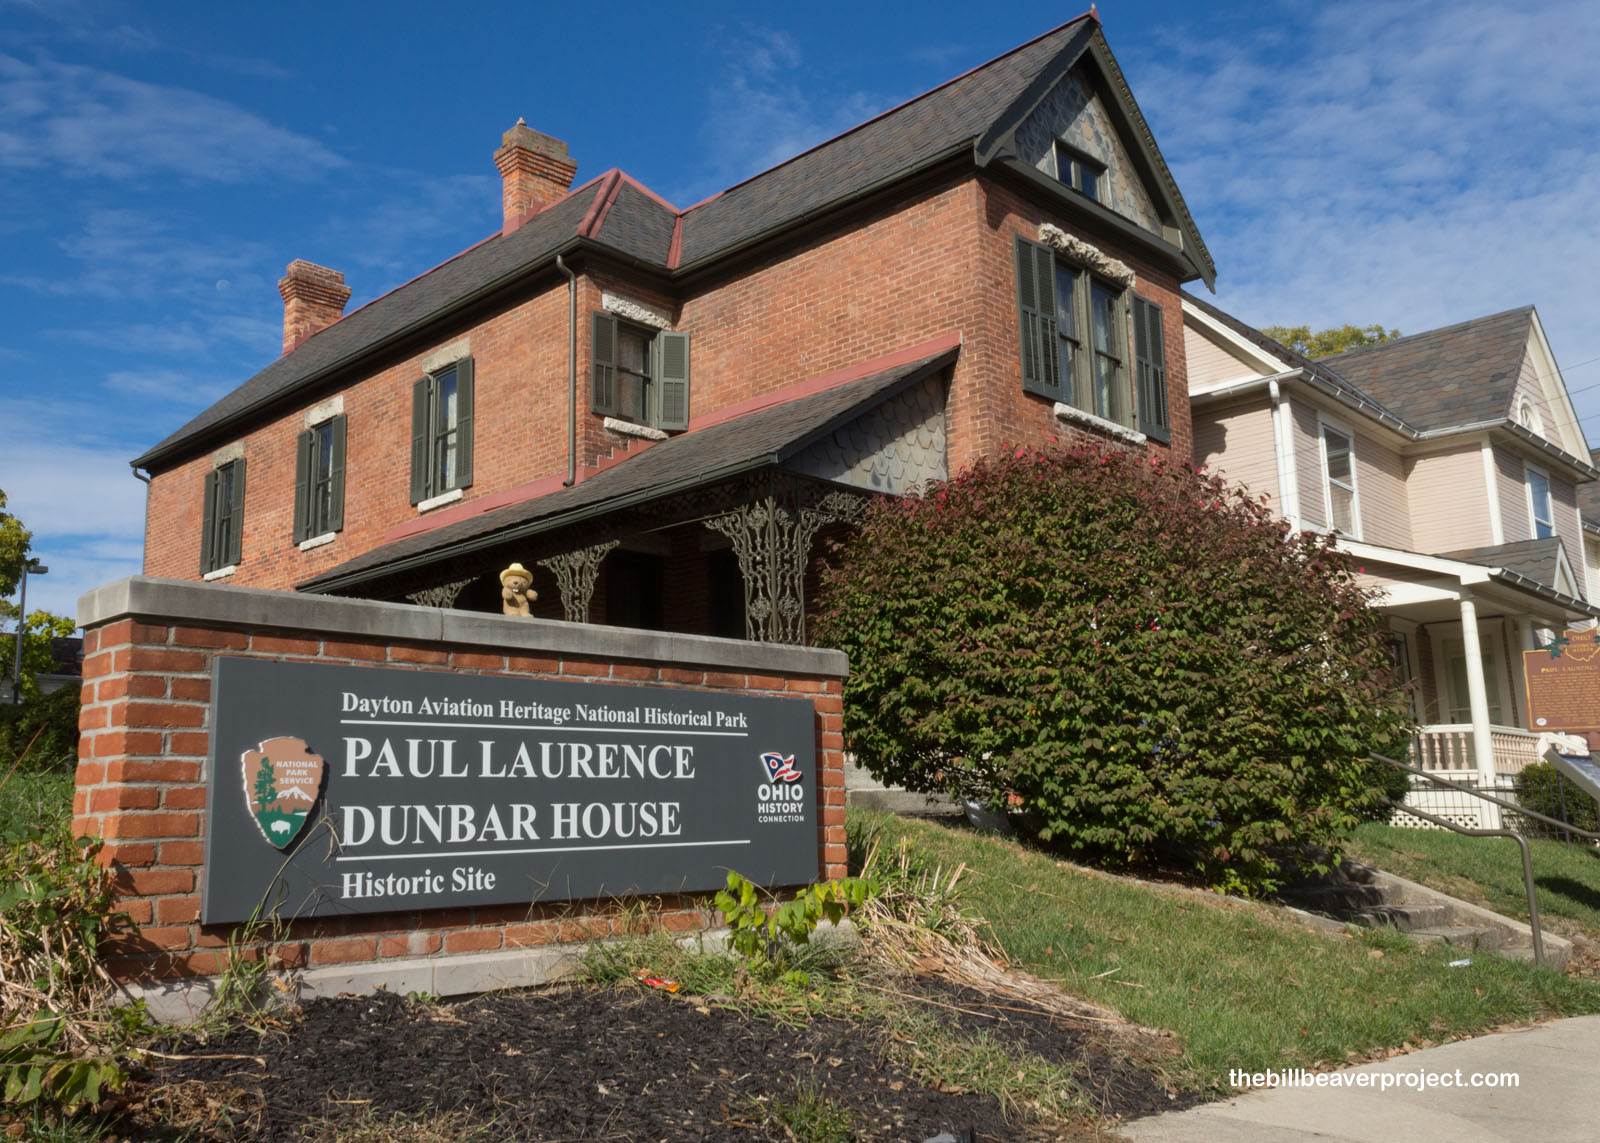 Paul Laurence Dunbar House